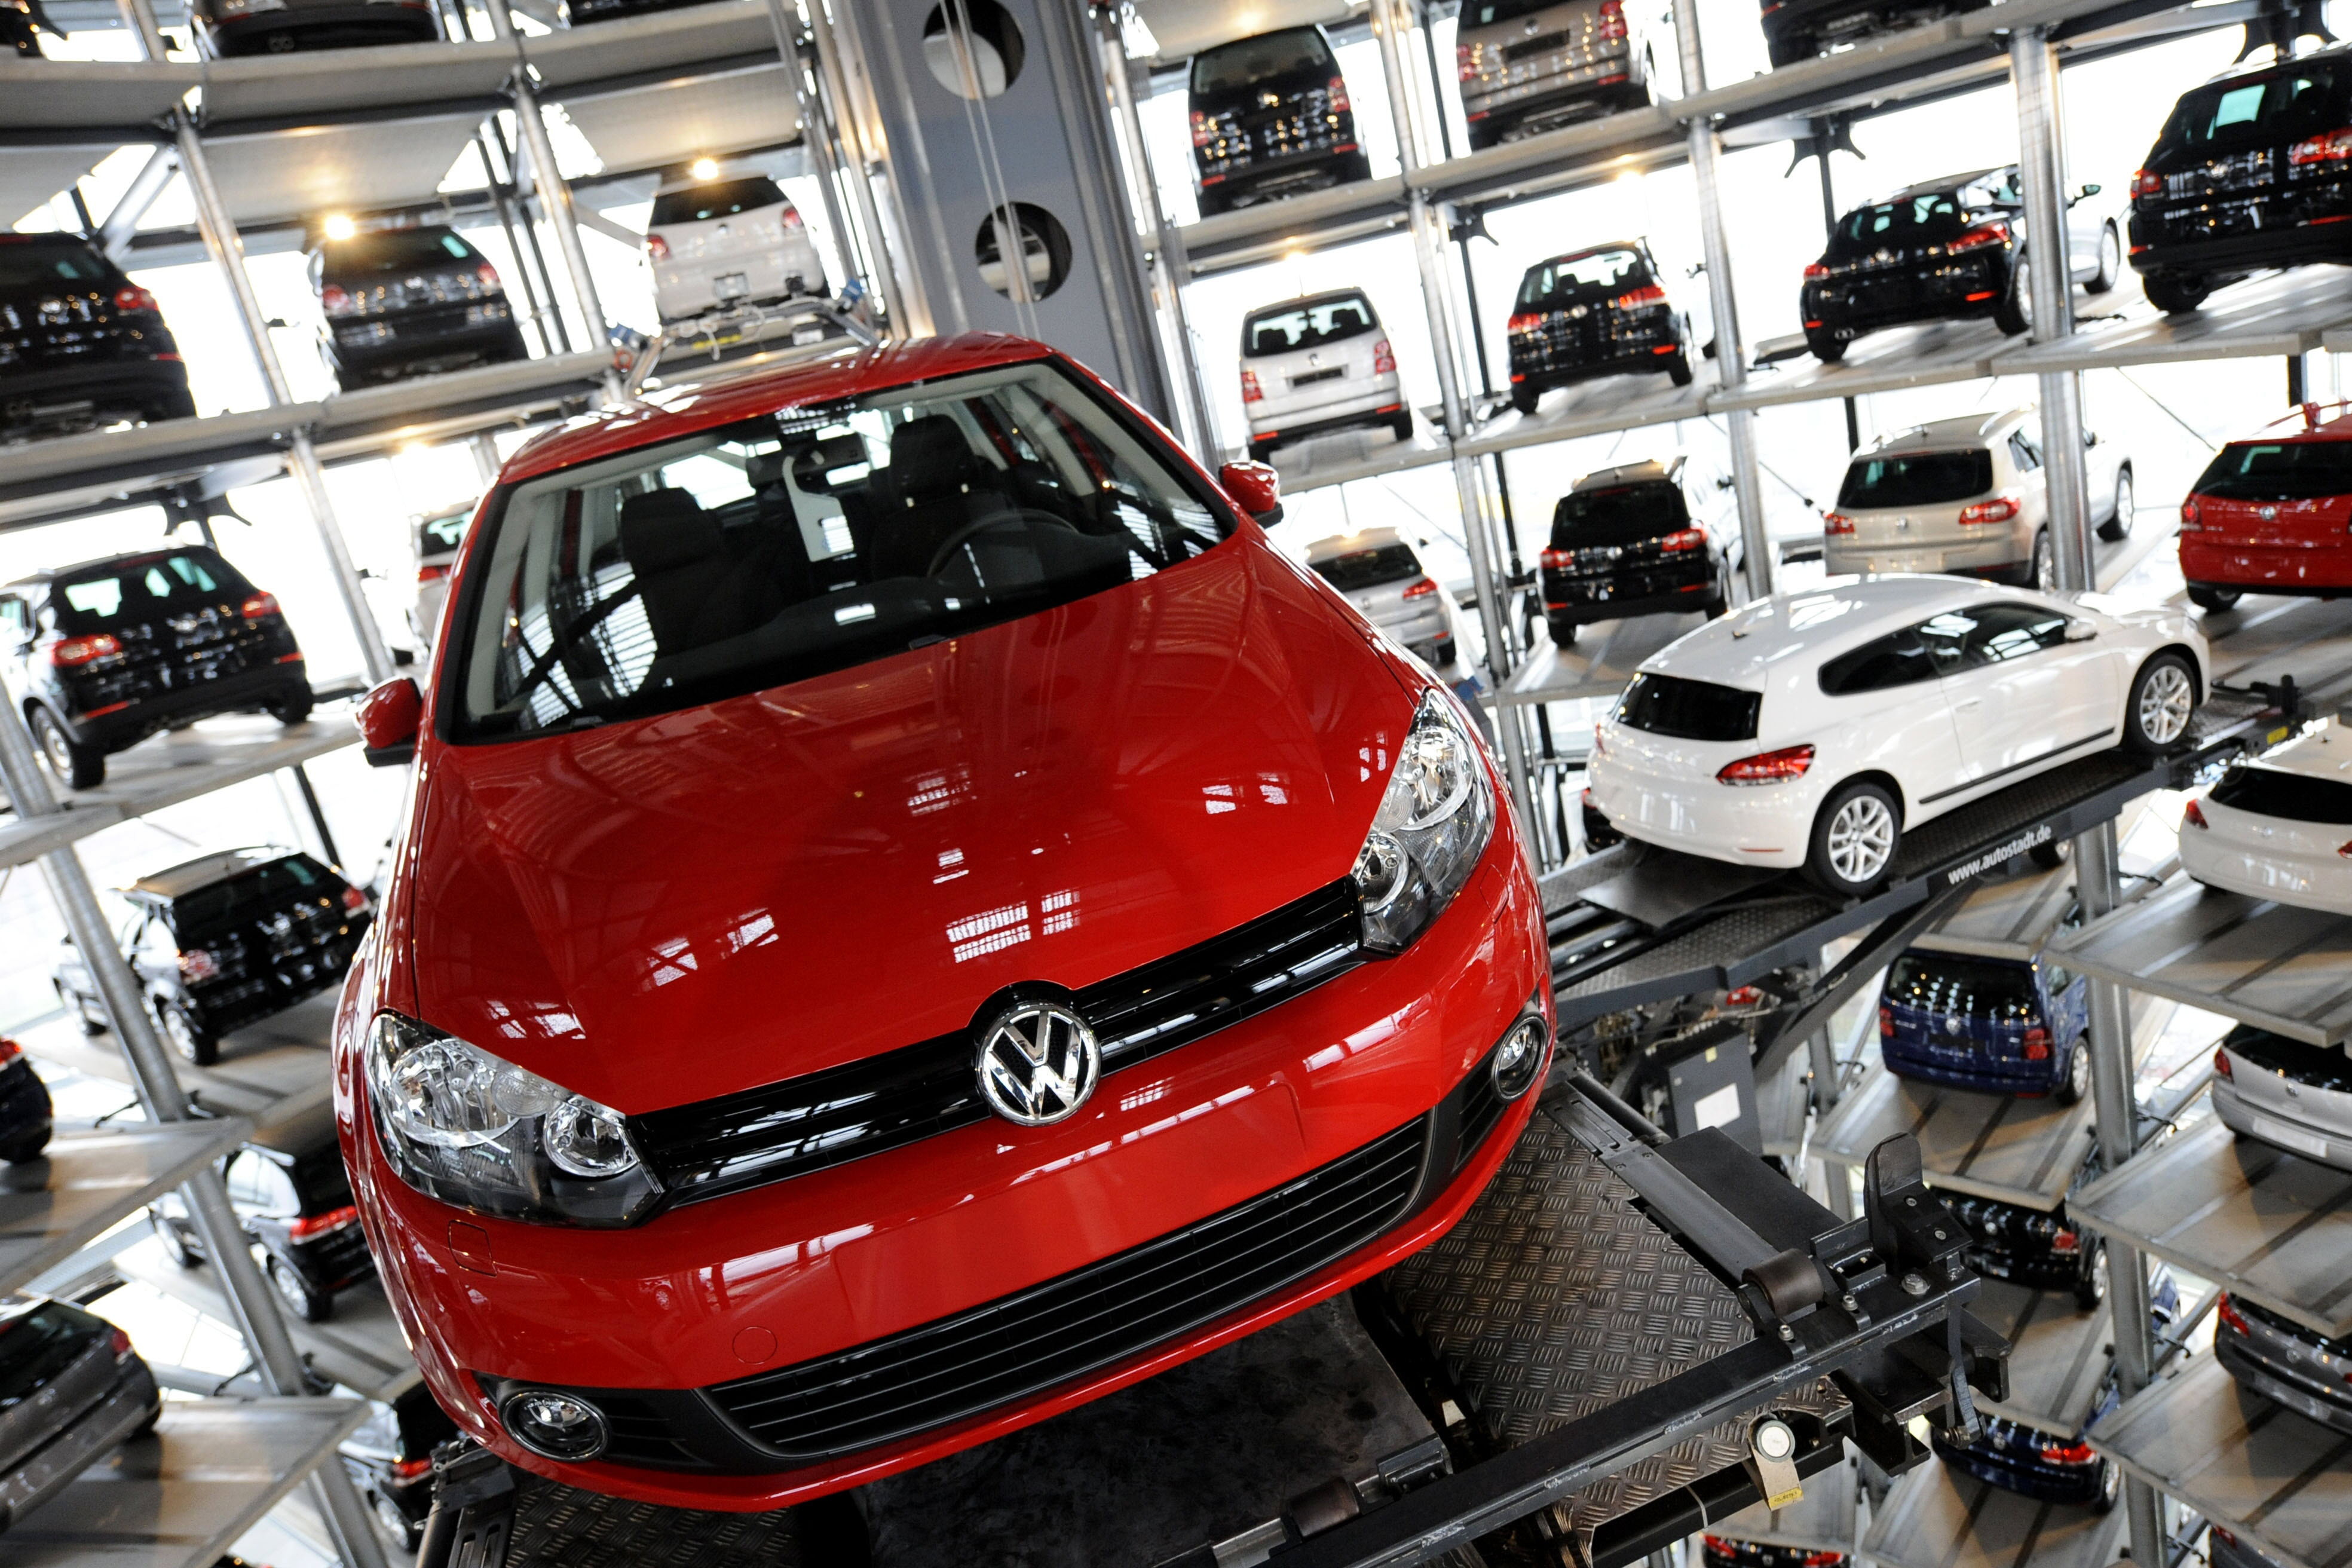 Statul român va da în judecată Volkswagen pentru recuperarea prejudiciului de peste 30 milioane euro